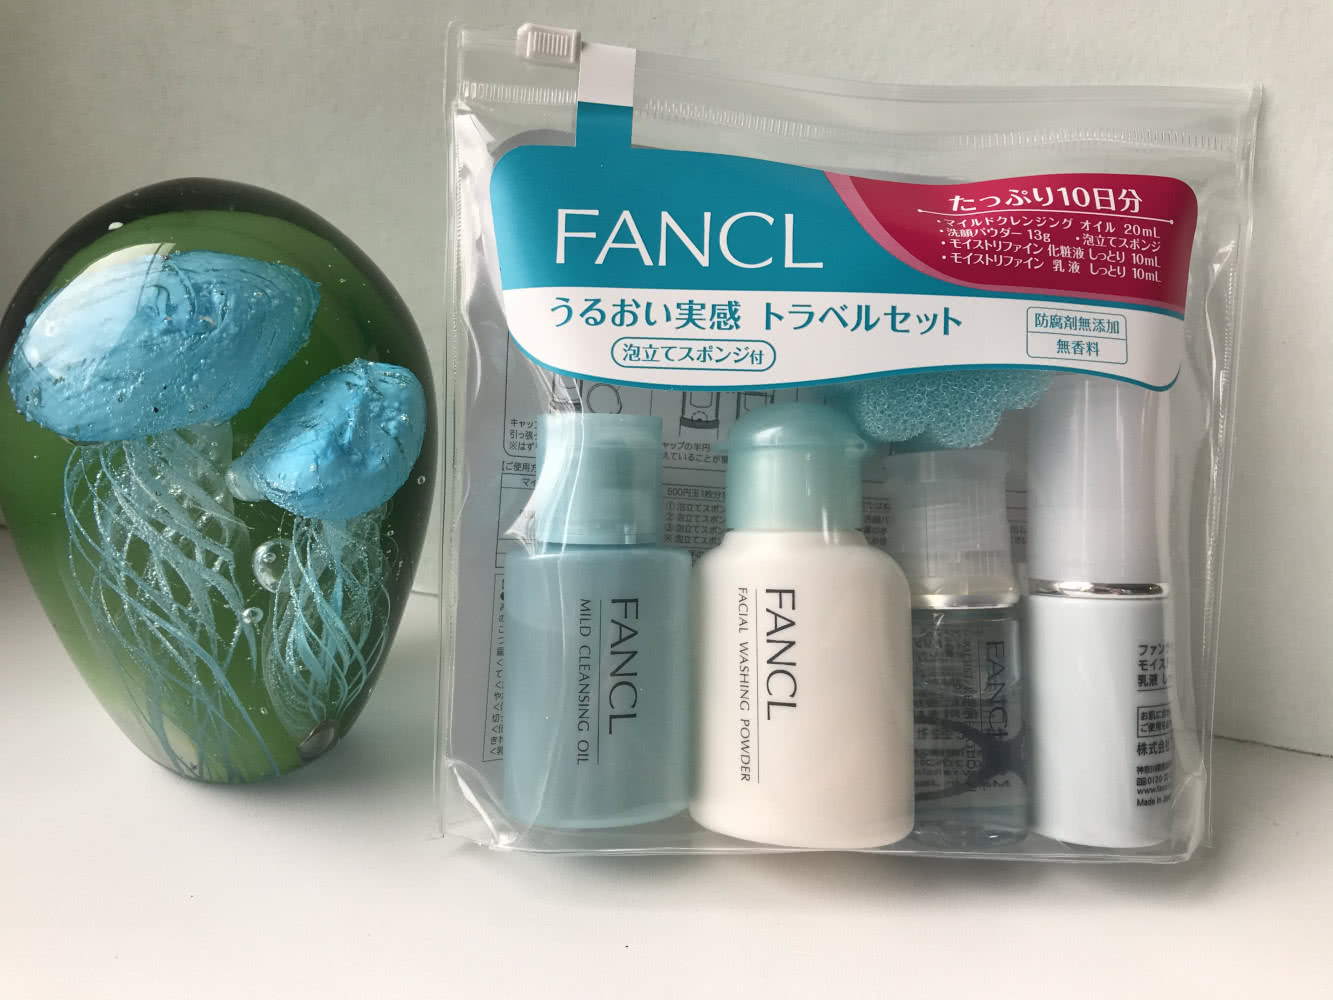 Набор для ухода за кожей - увлажнение от Fancl